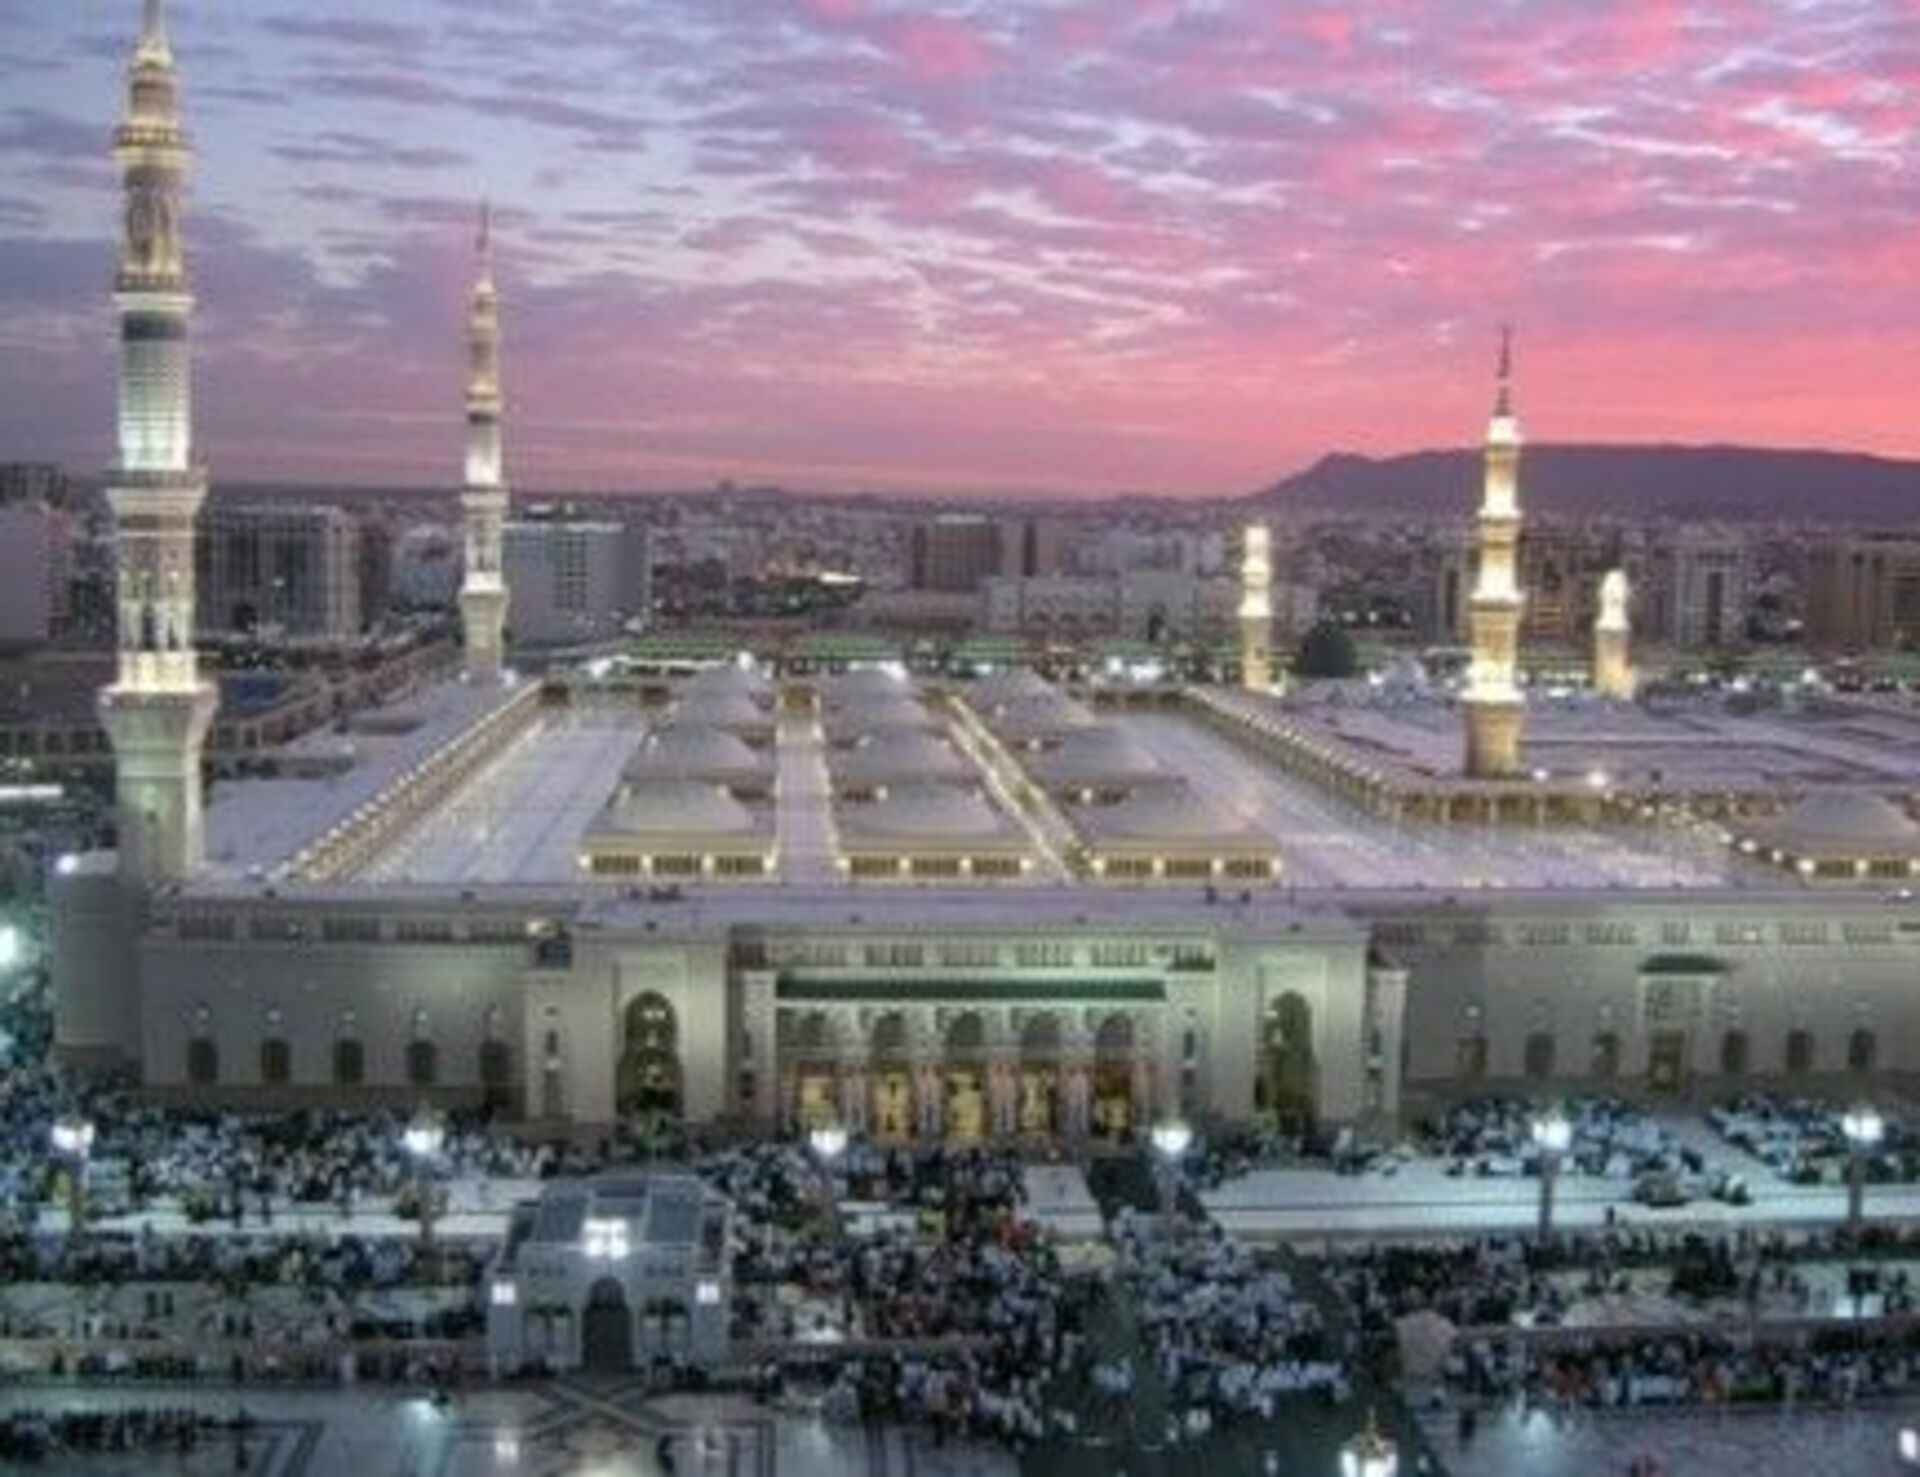 Мекка медина страна. Саудовская Аравия Мадина макка. Мечеть пророка в Мекке. Мечеть Аль-харам Саудовская Аравия. Аль-Набави (мечеть пророка) в Медине.